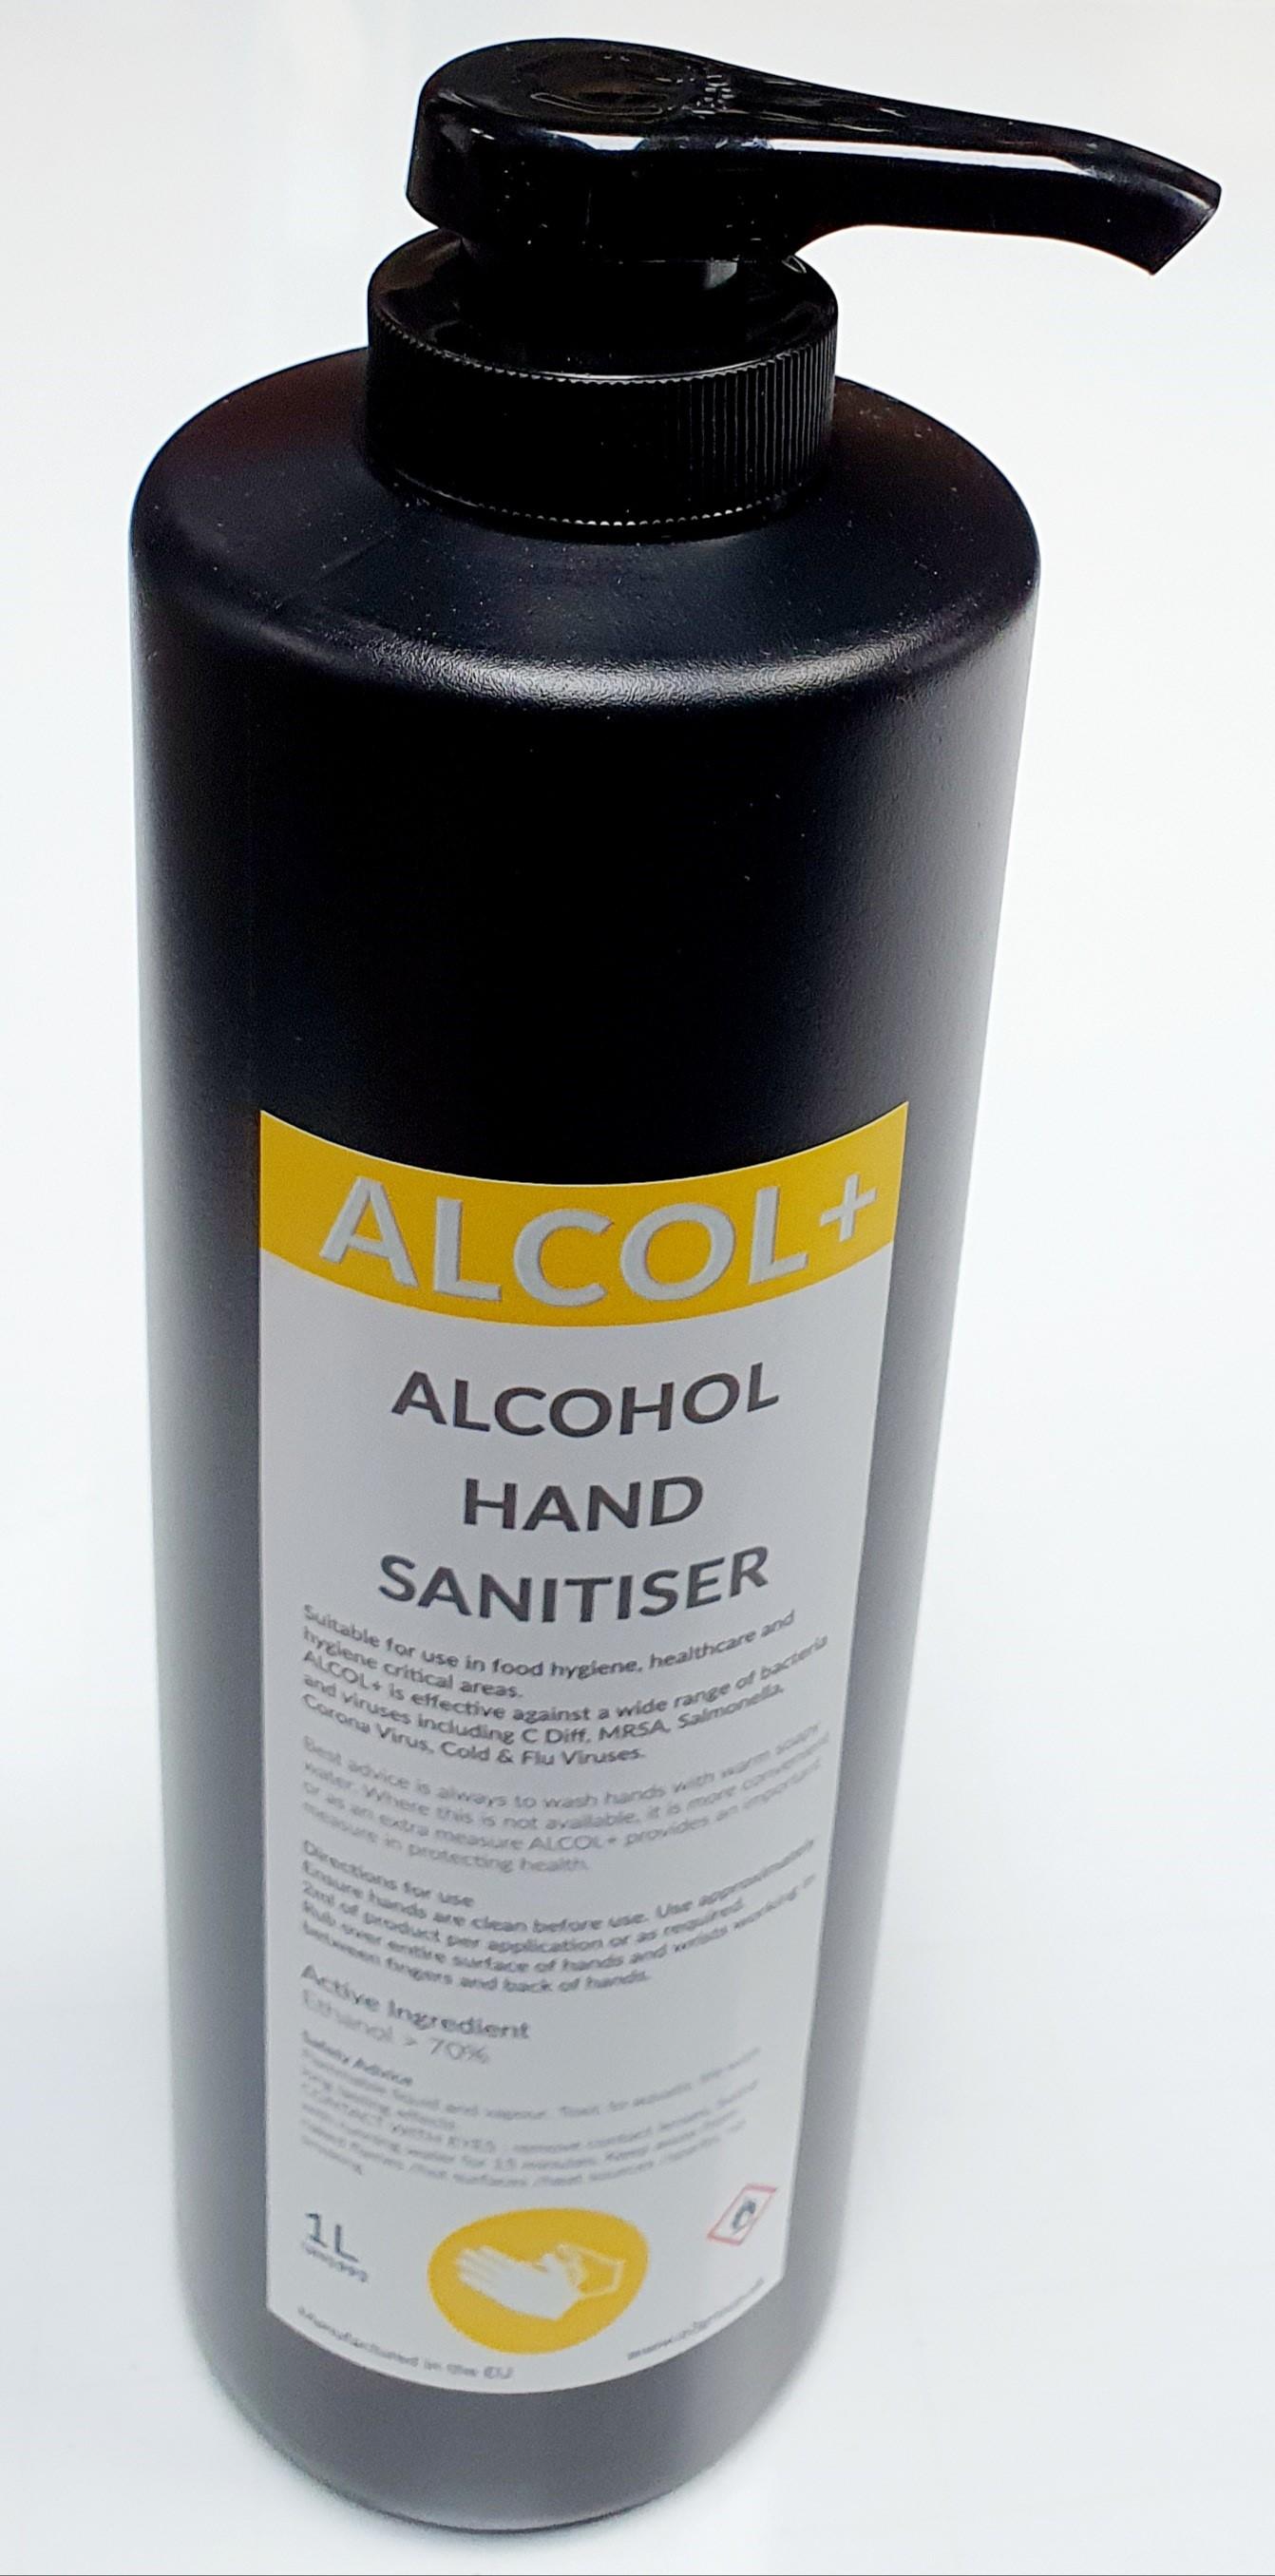 ALCOL Hand Sanitiser 1 Litre pump bottle